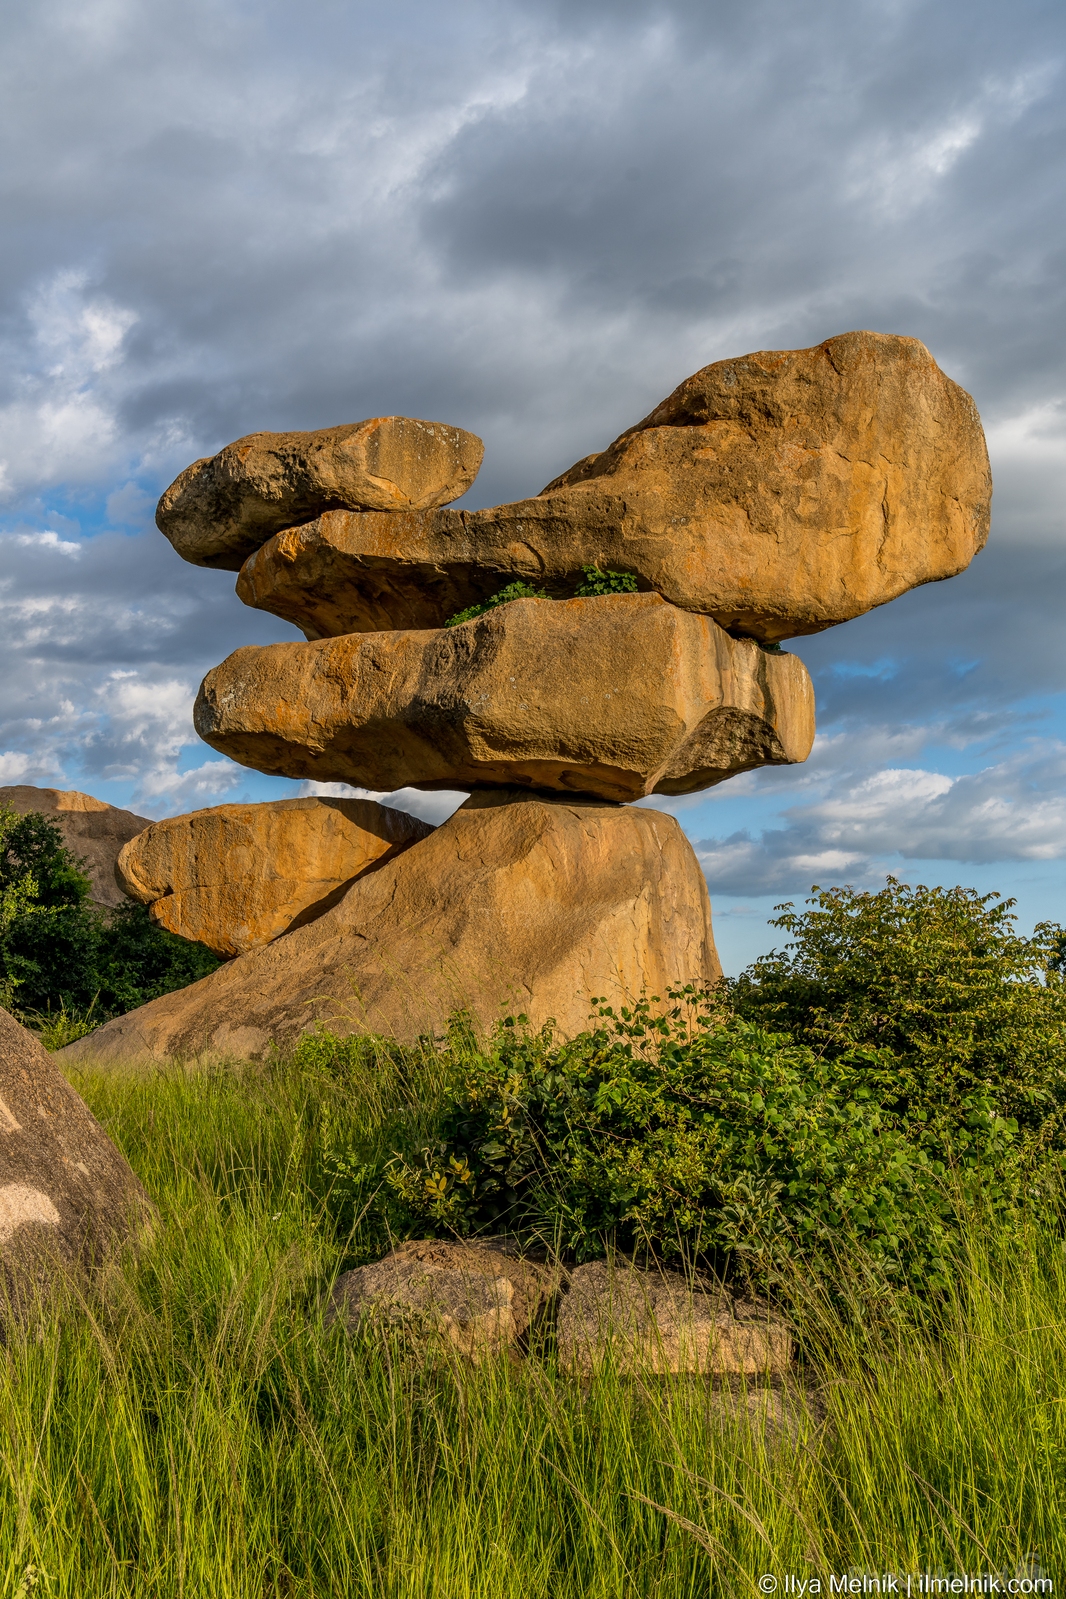 Image of Epworth Balancing Rocks by Ilya Melnik